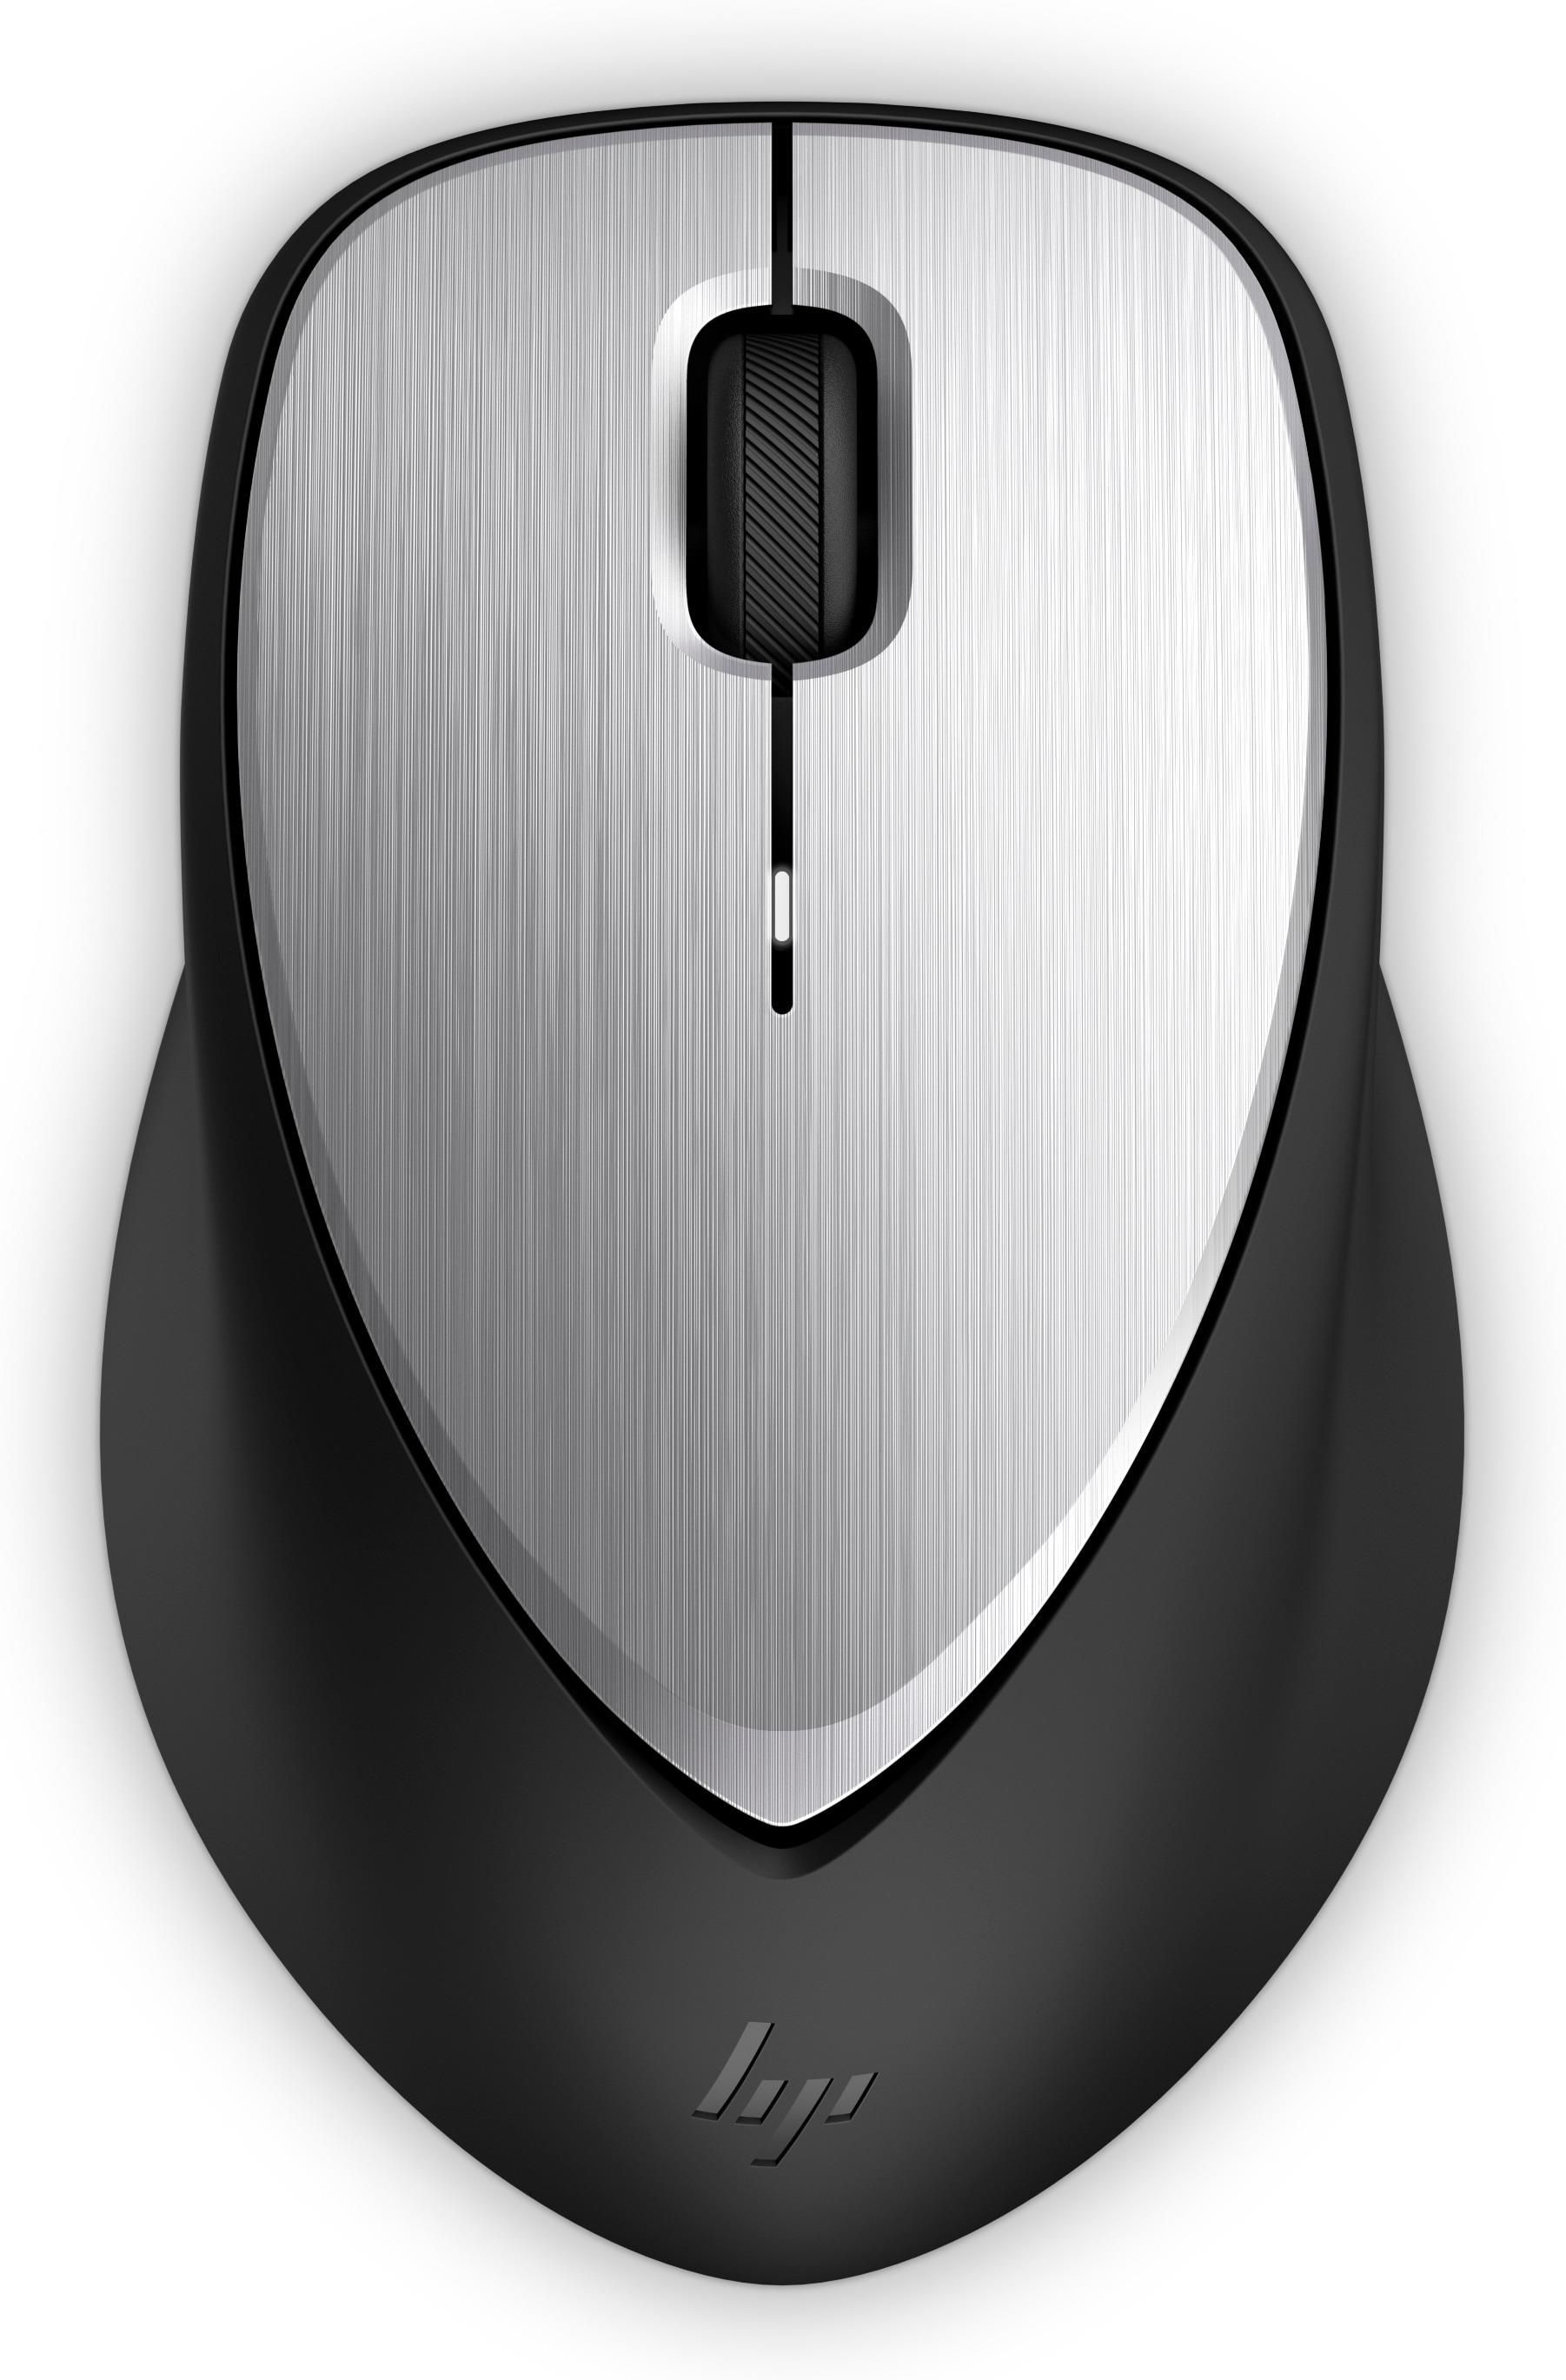 HP Envy 500 Mouse